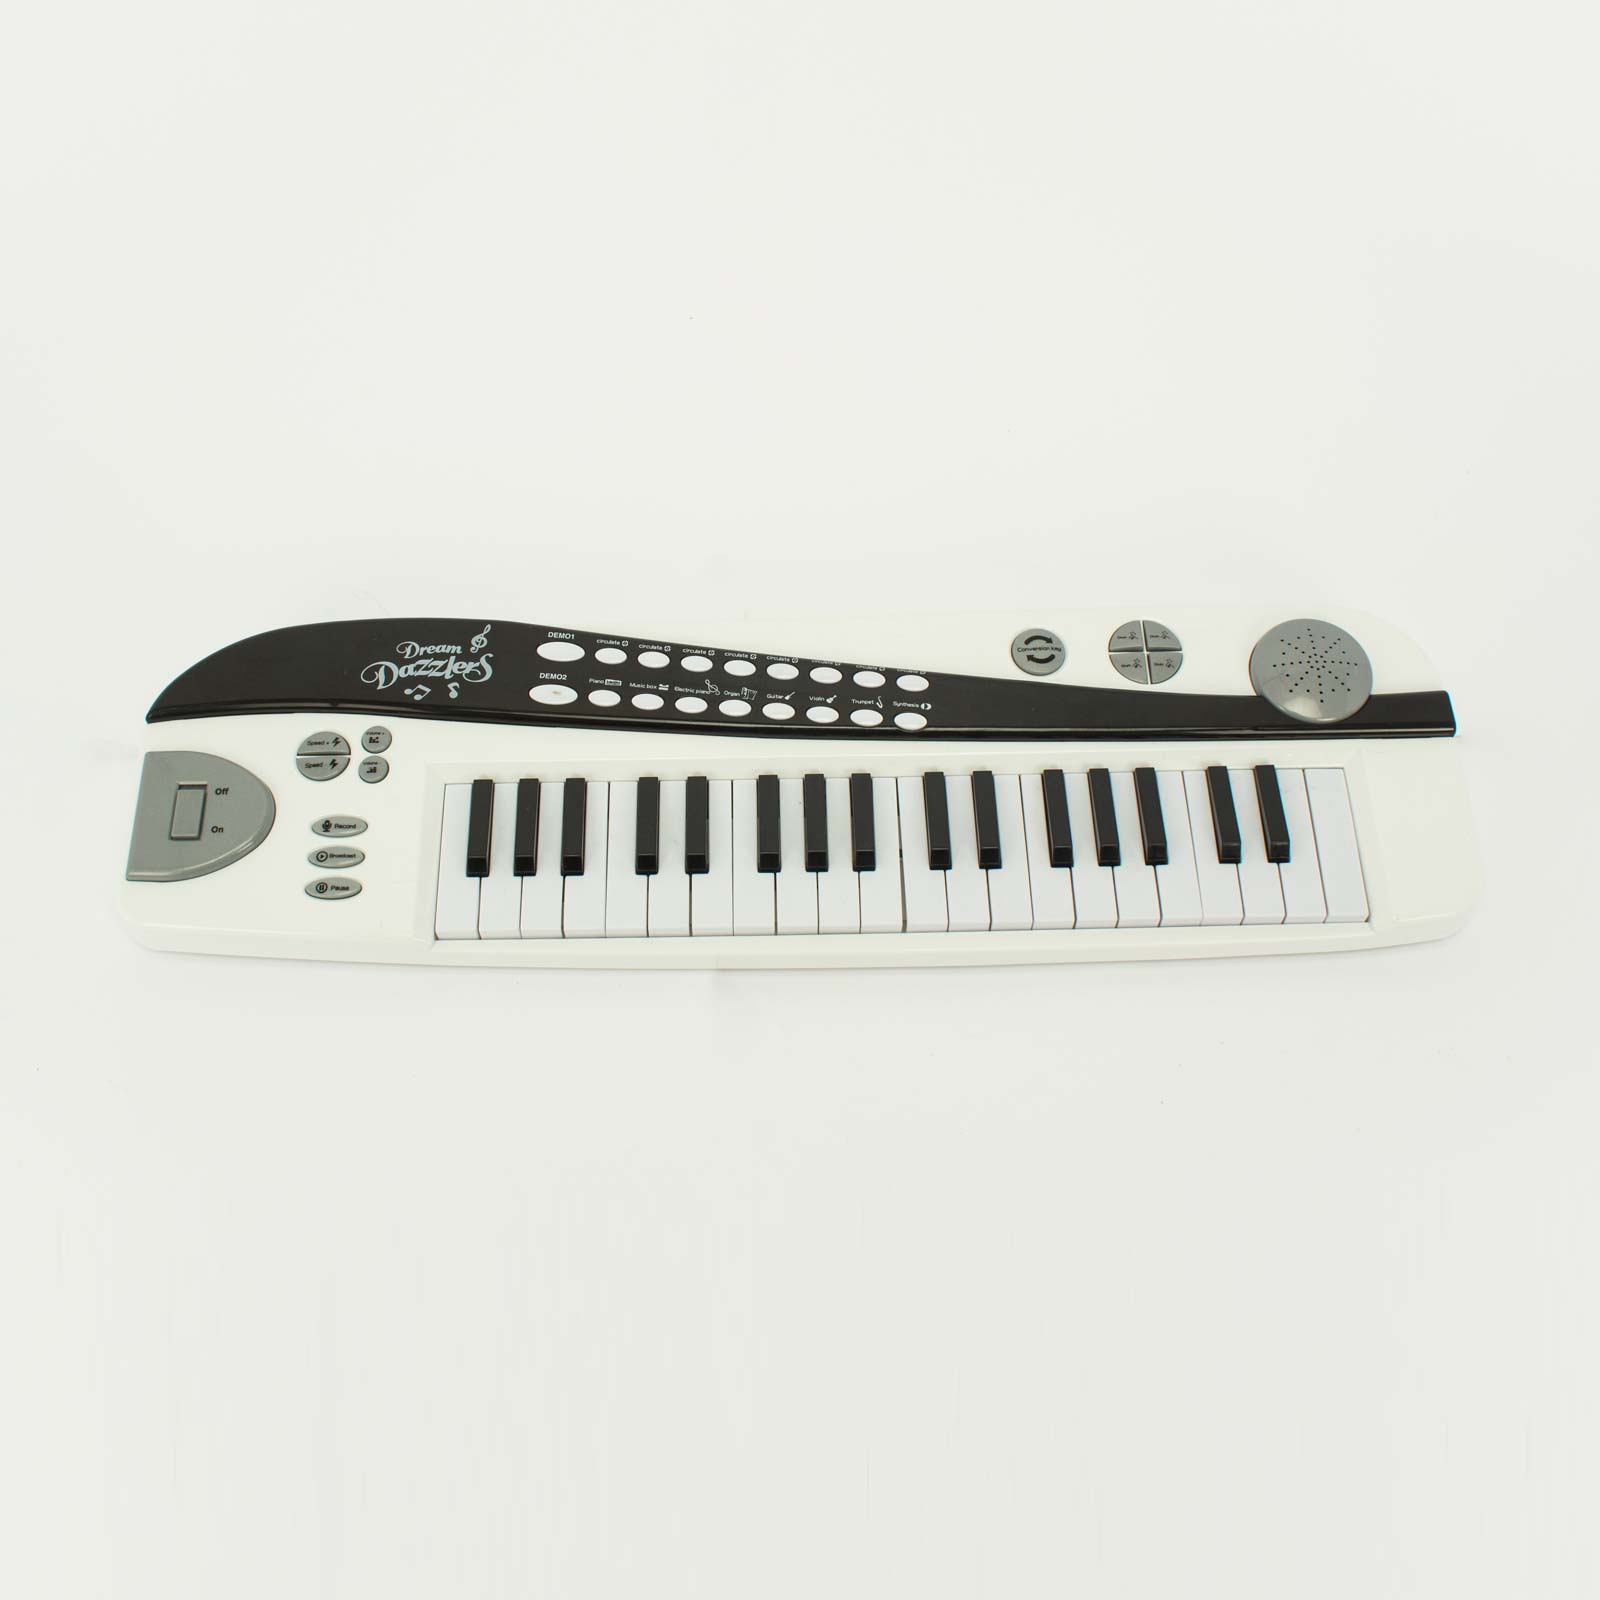 teclado-electrico-infantil-dream-dazzler-2020062279501